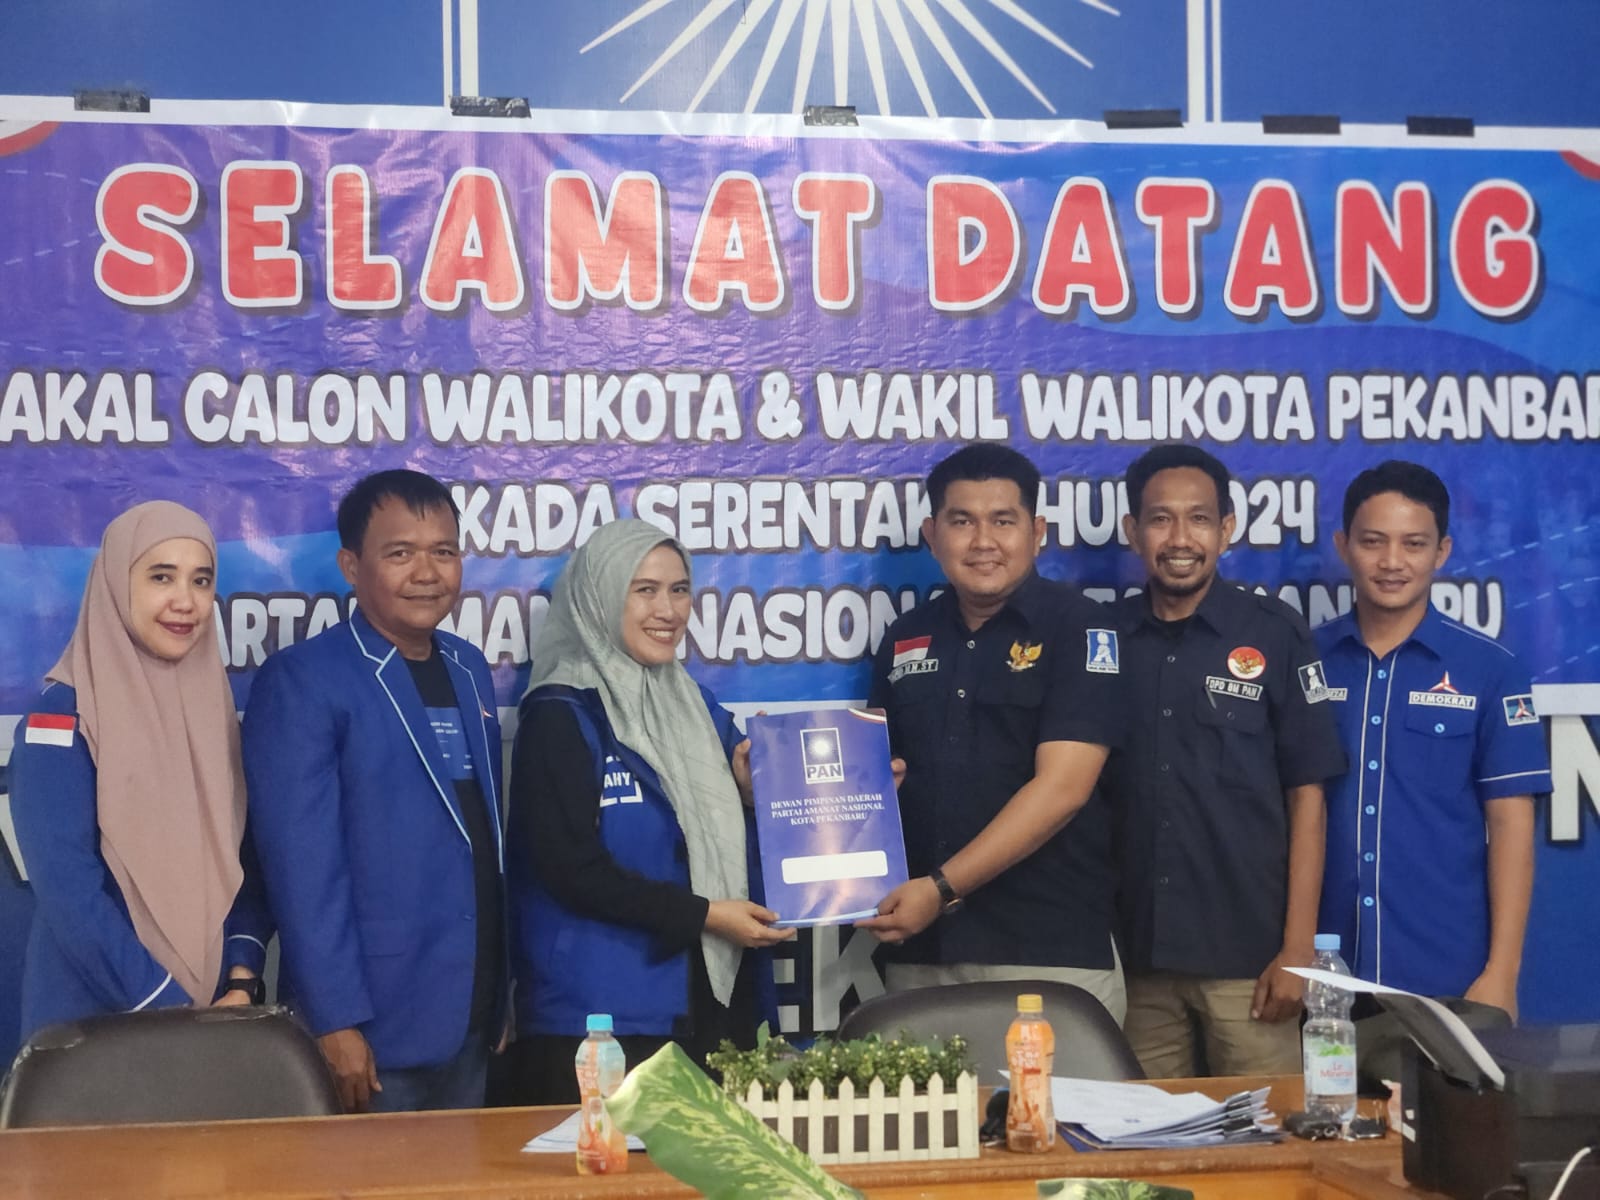 Agung Nugroho Ambil Formulir Penjaringan Balon Wali Kota Pekanbaru dari PAN